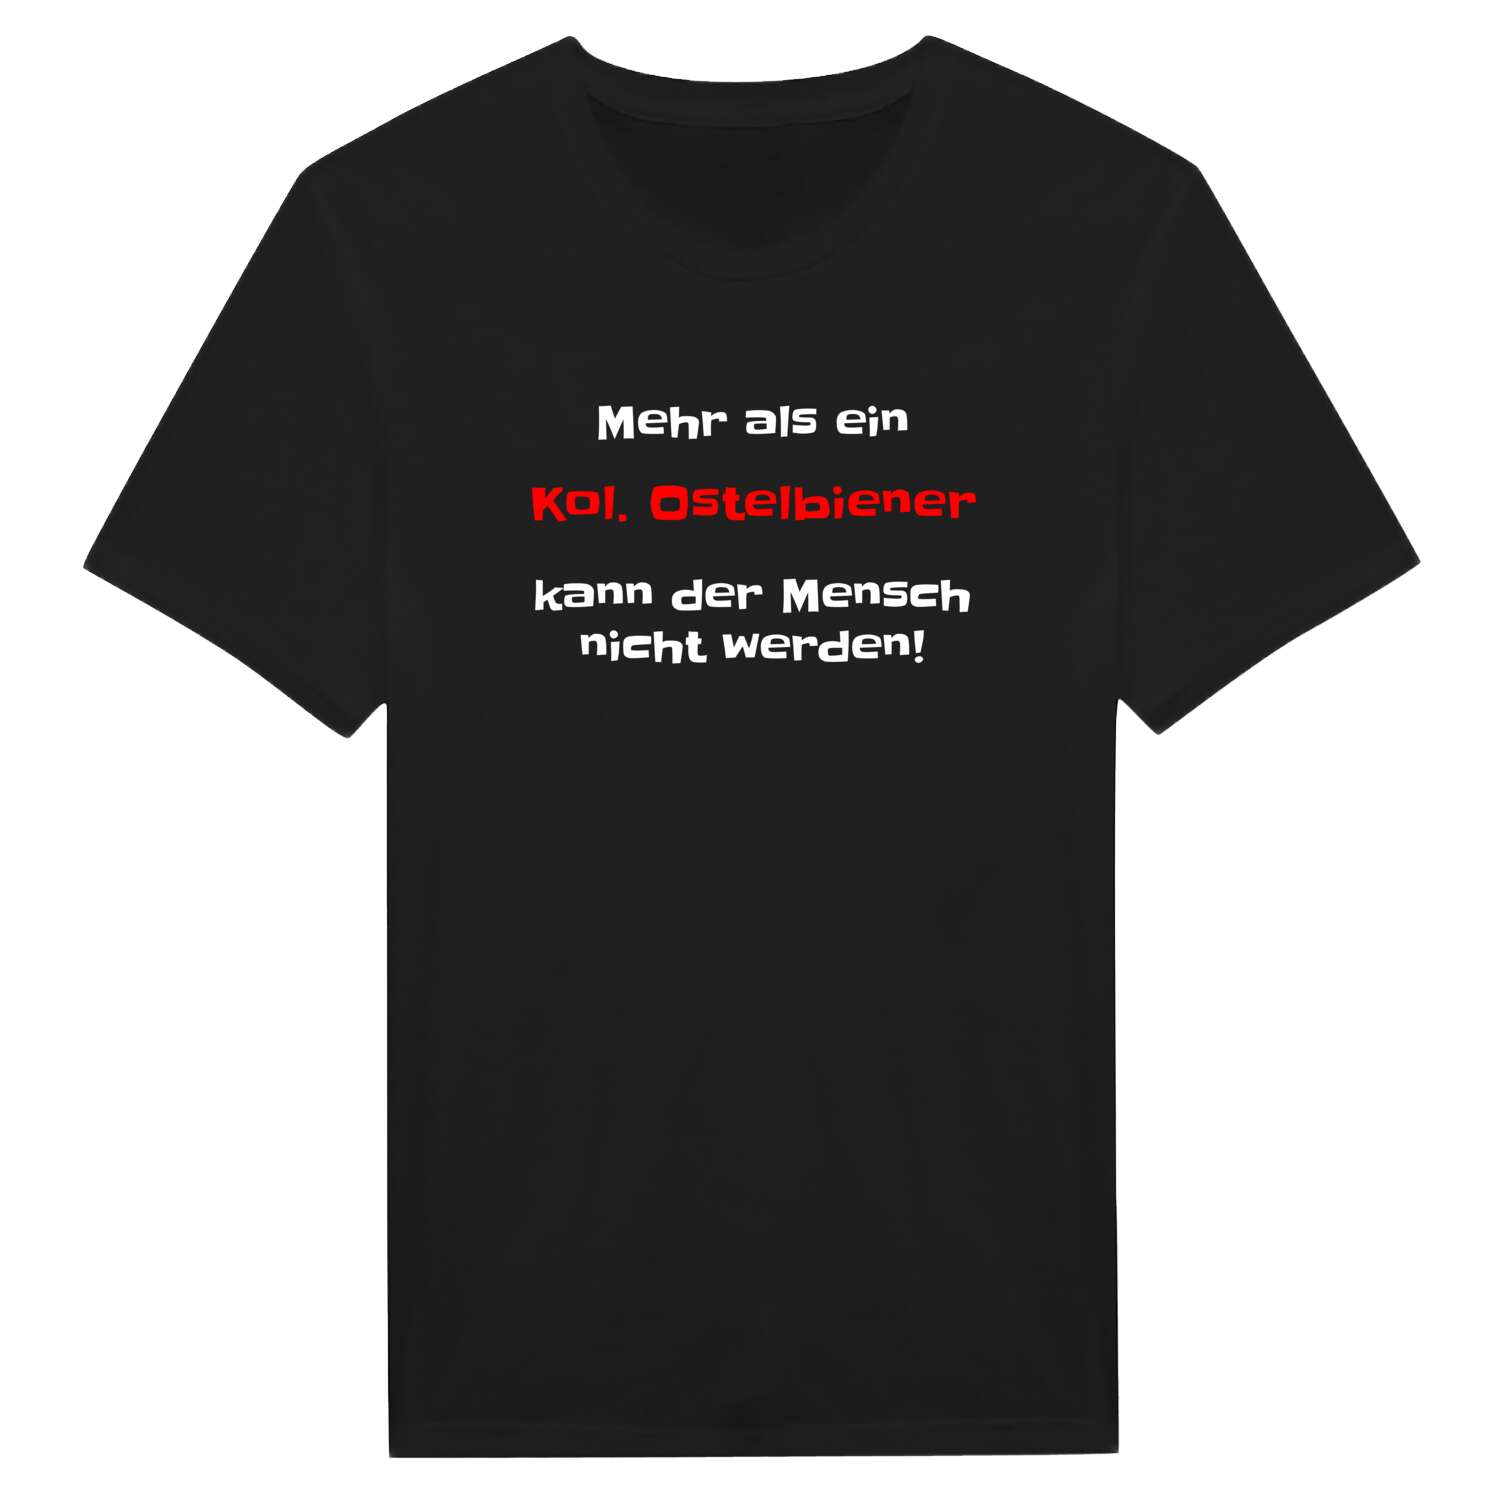 Kol. Ostelbien T-Shirt »Mehr als ein«